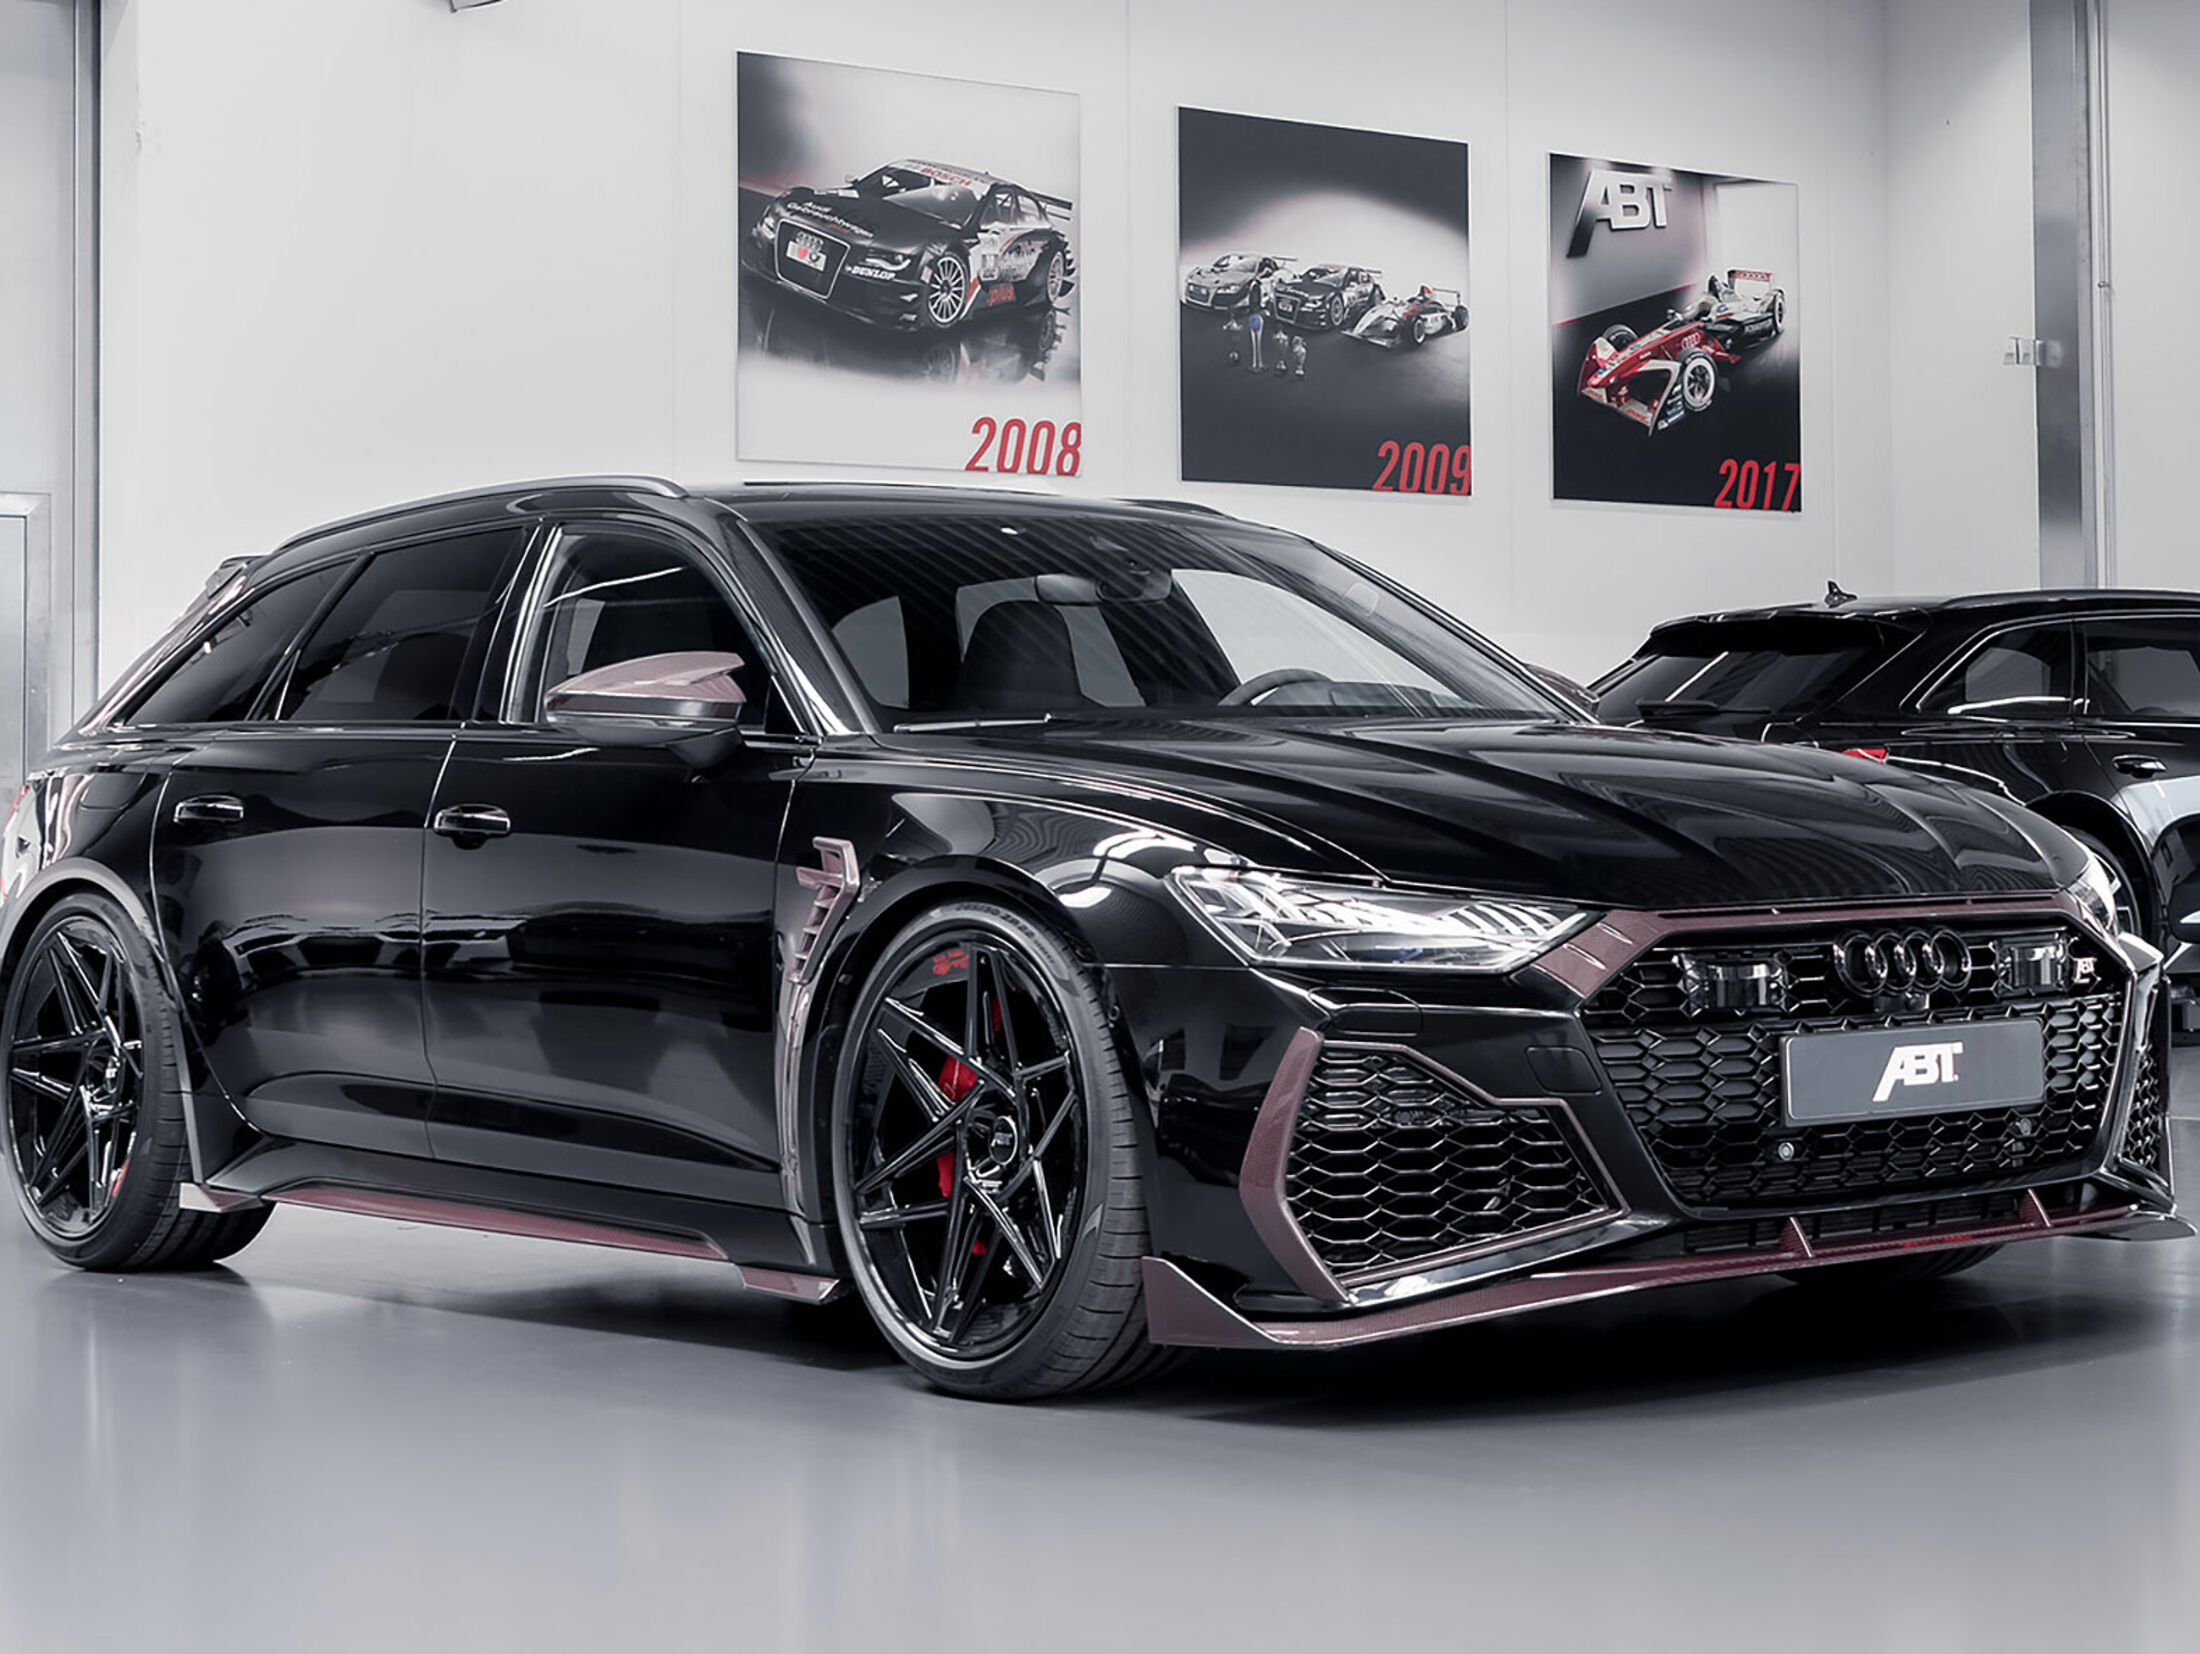 https://imgr1.auto-motor-und-sport.de/Audi-RS6-Johann-Abt-Signature-Edition-jsonLd4x3-b4328d96-1802747.jpg